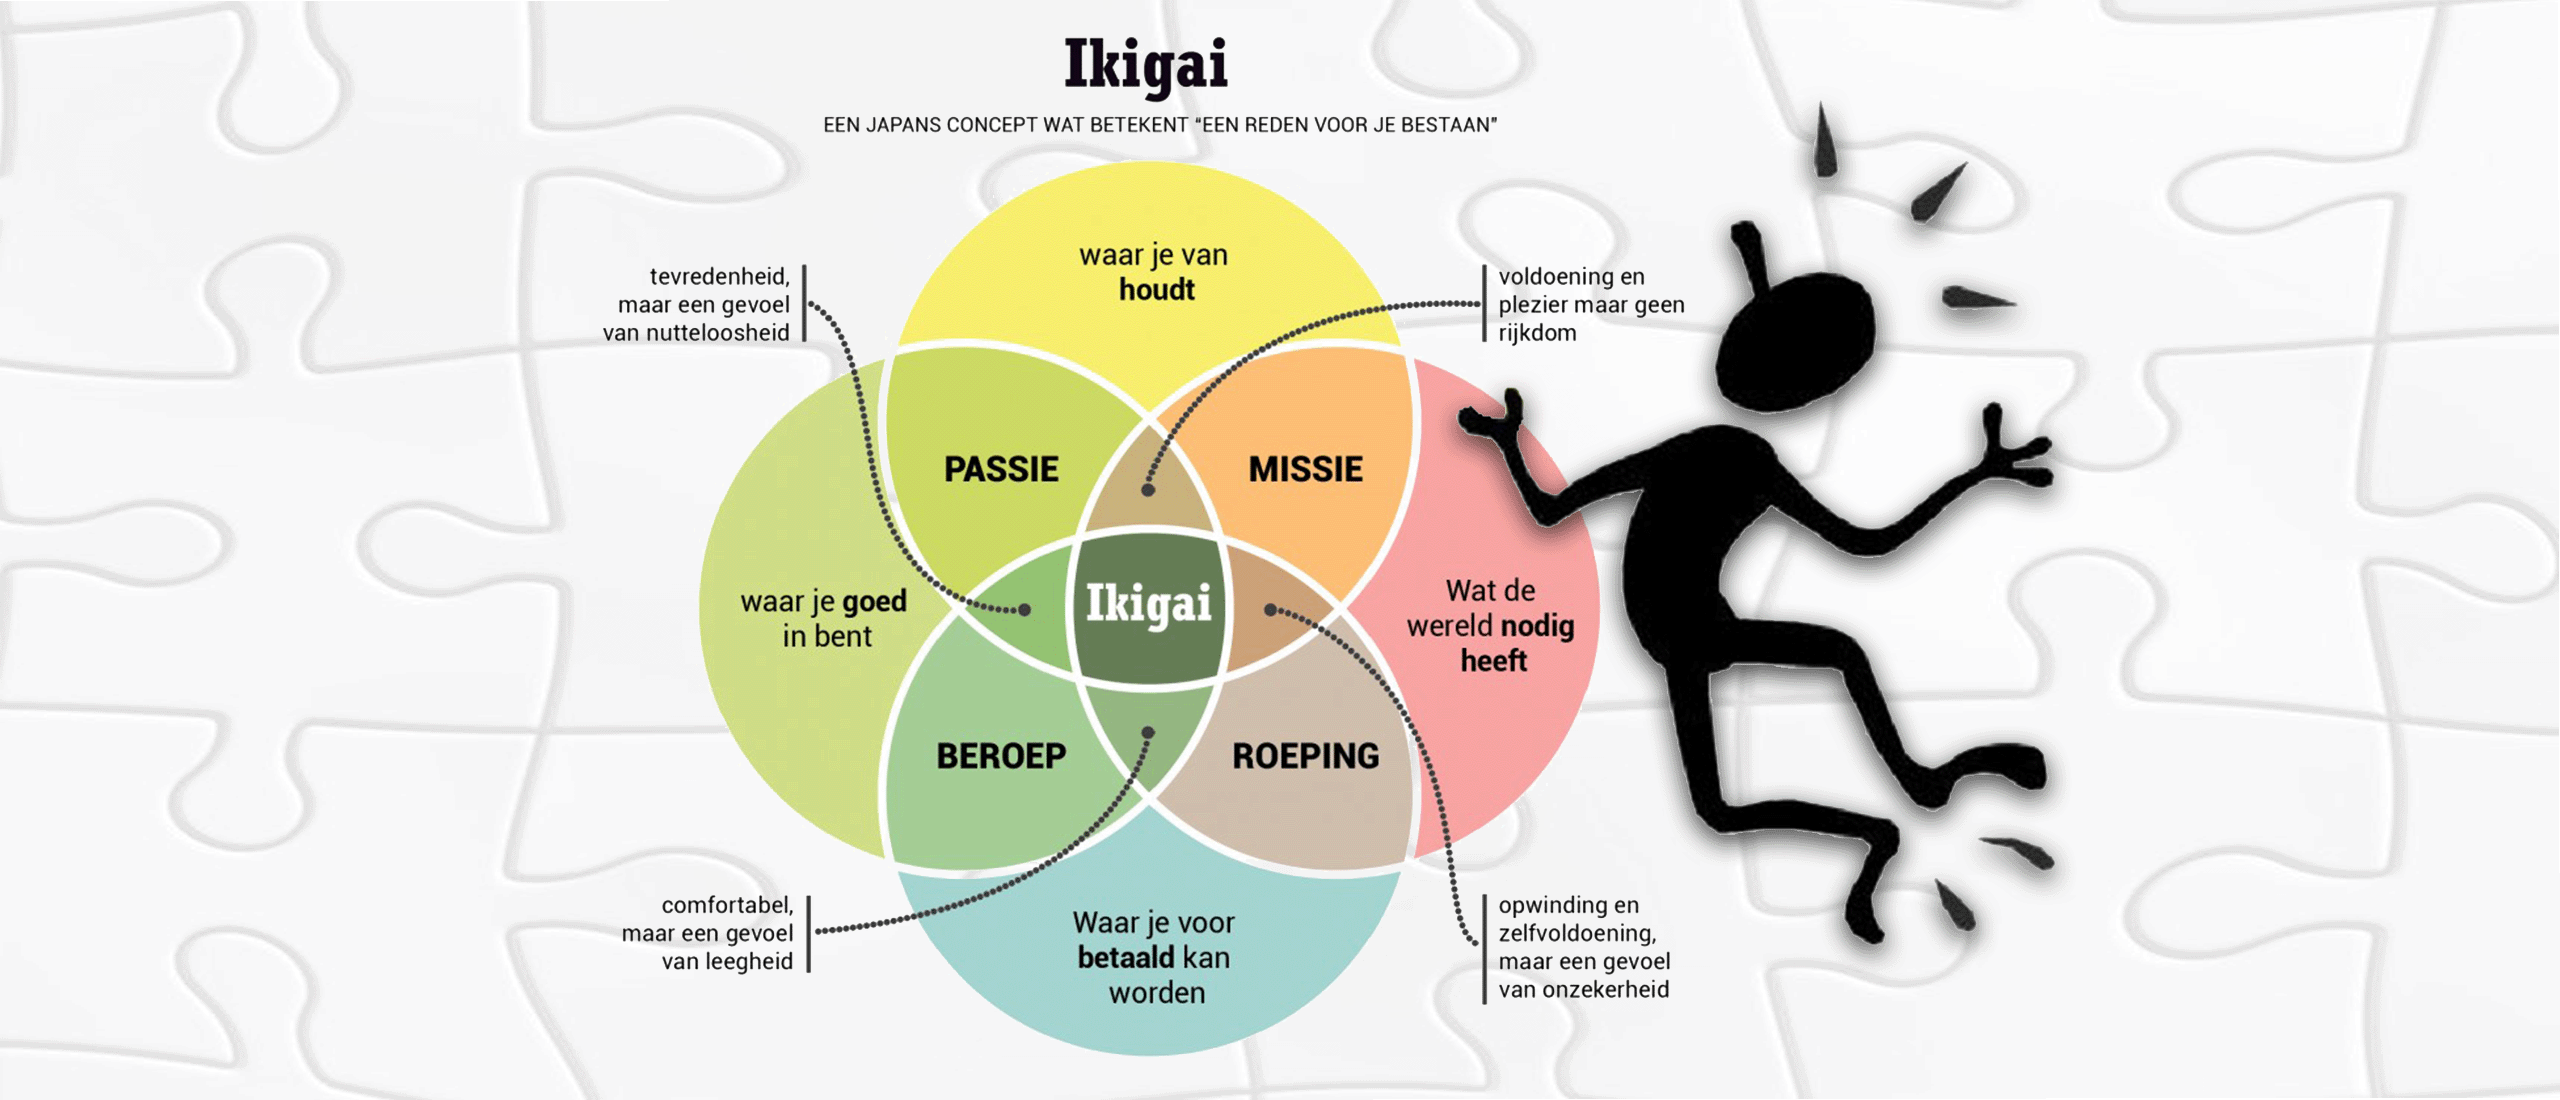 Ikigai: Een reden van bestaan